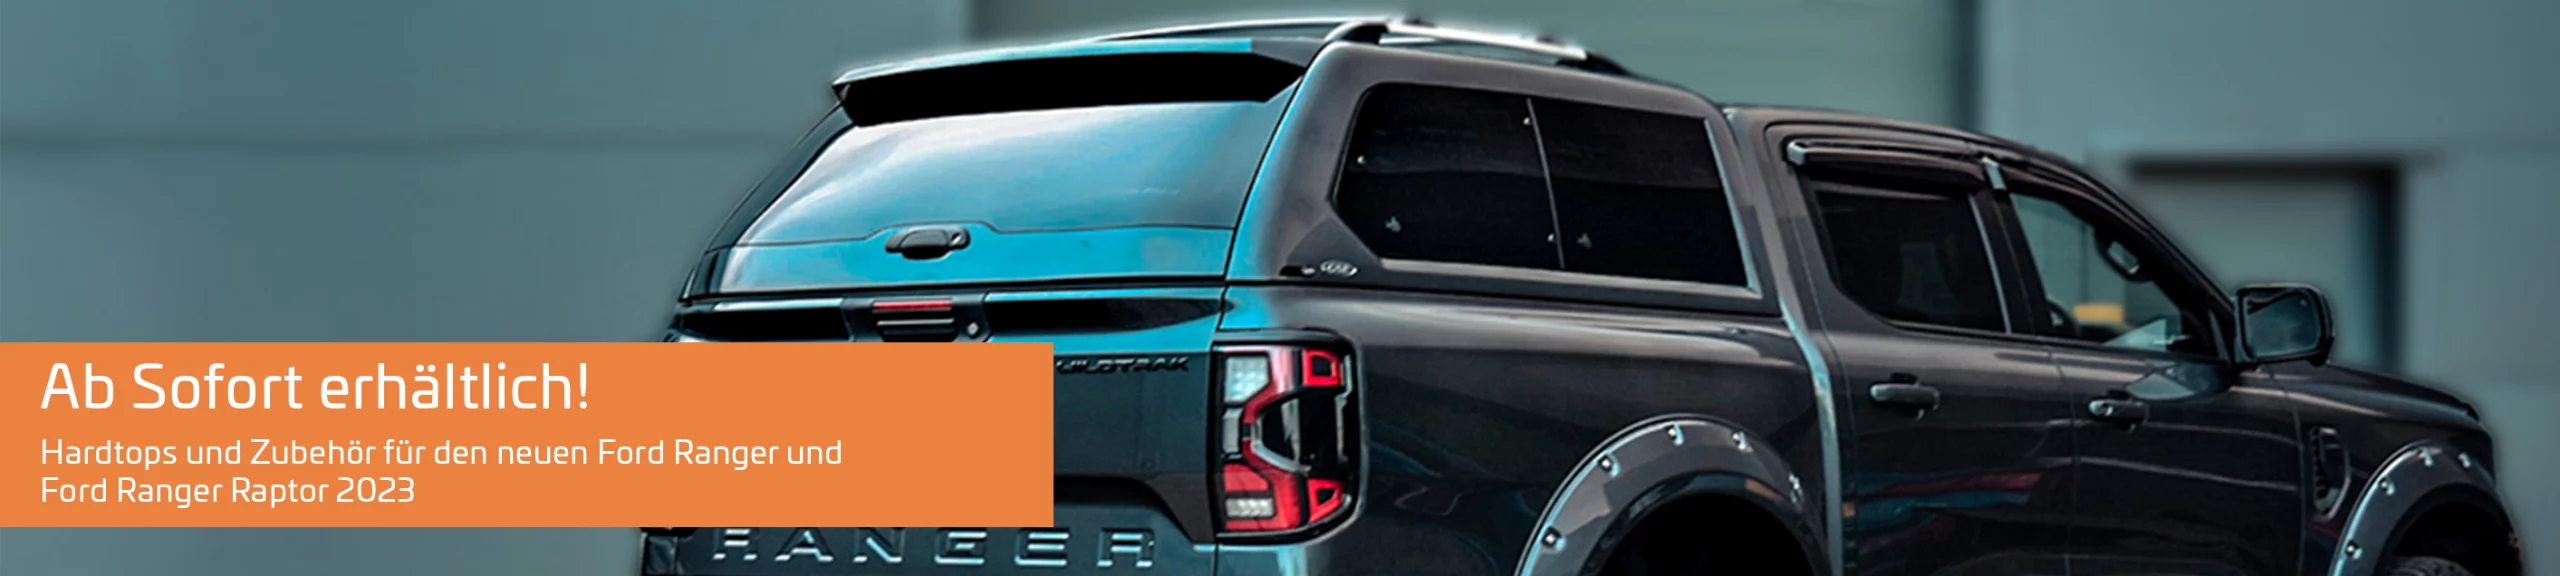 Ab Sofort verfügbar: Hardtops und Zubehör für den neuen Ford Ranger und Ford Ranger Raptor ab 2023